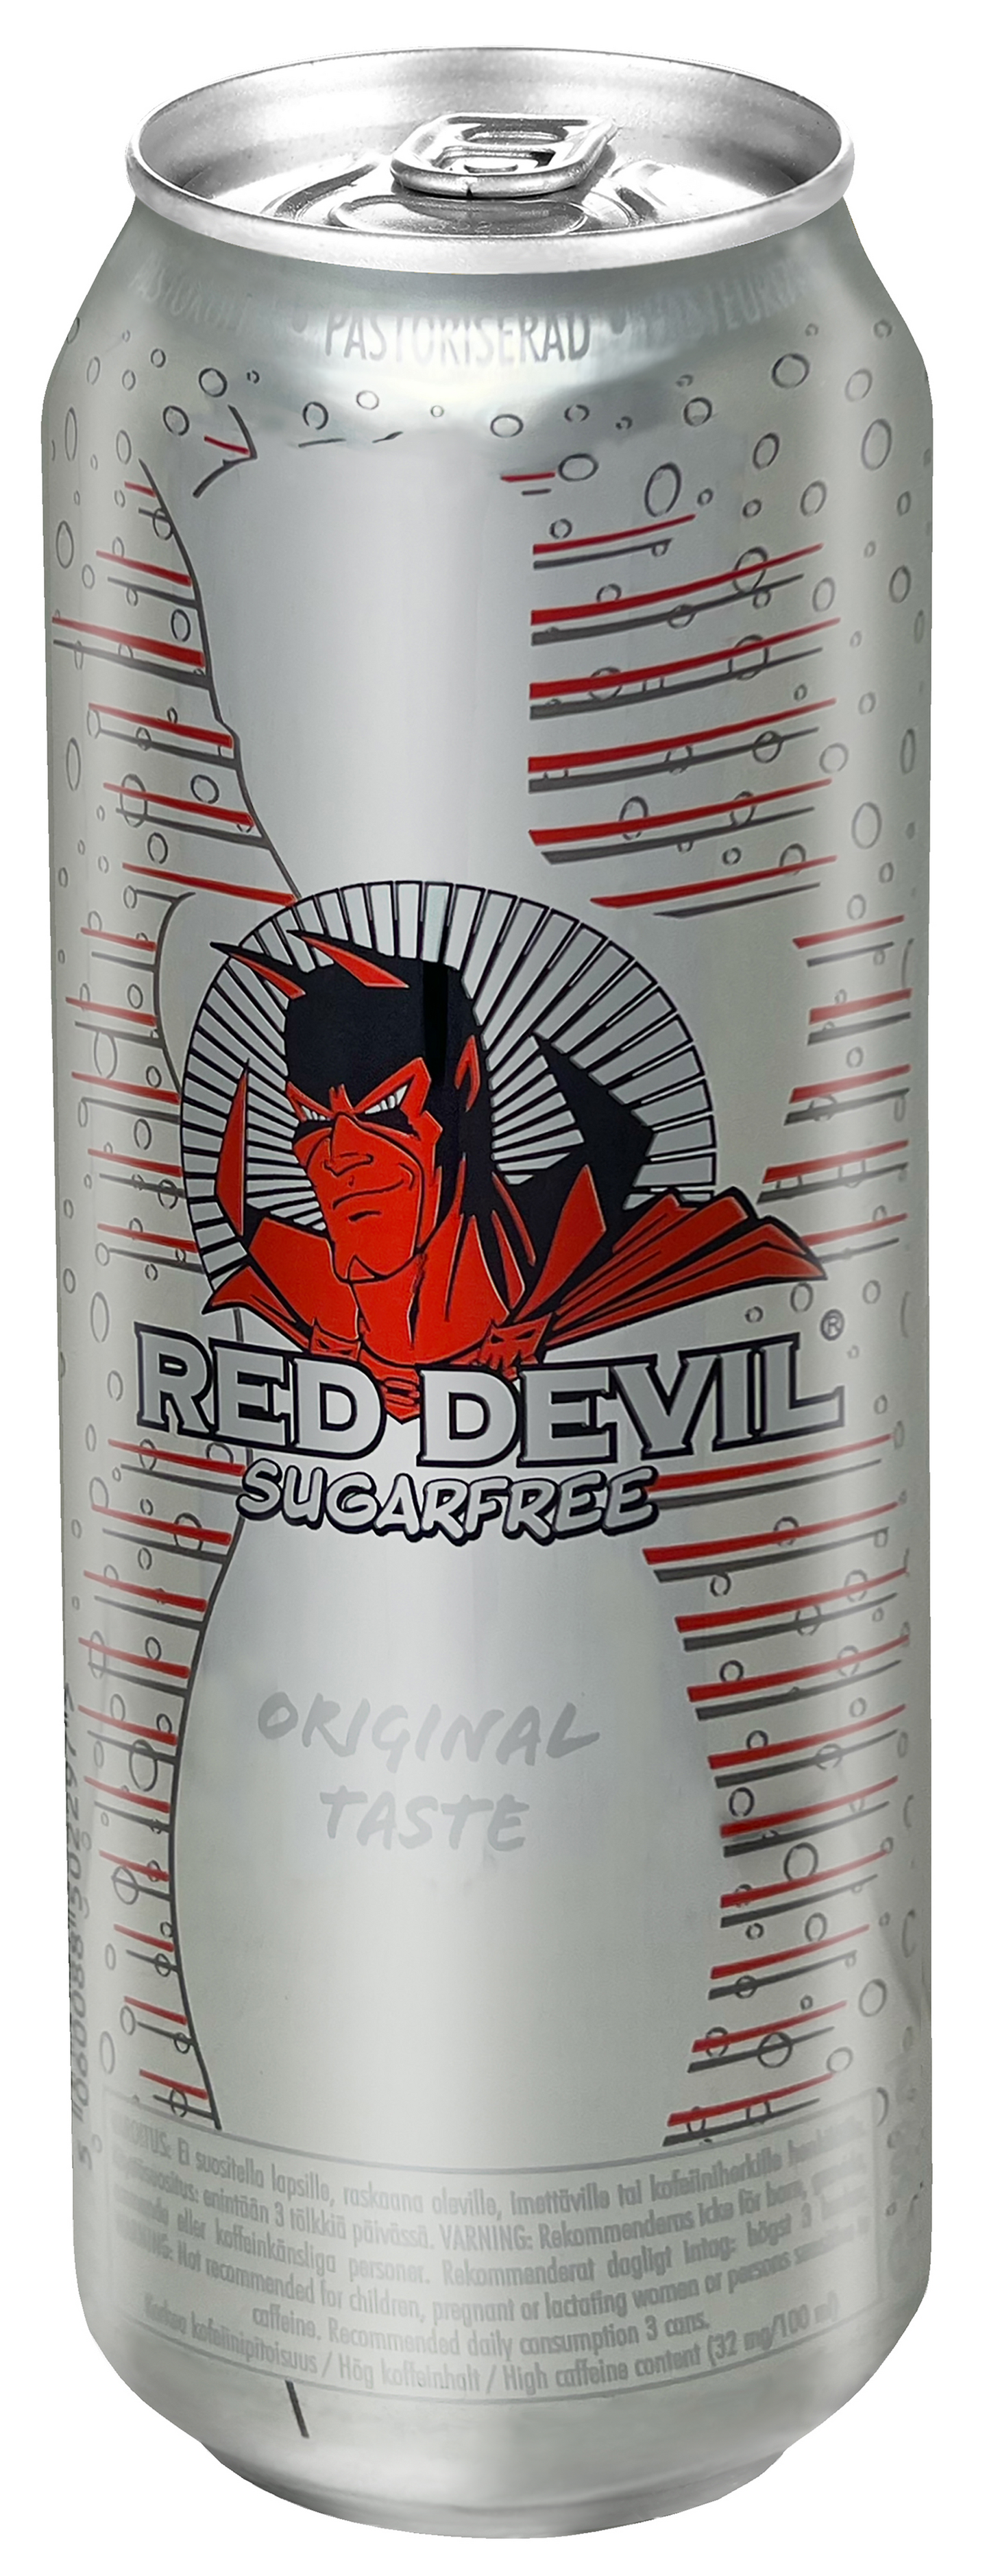 Red Devil Original energiajuoma sokeriton 0,5l